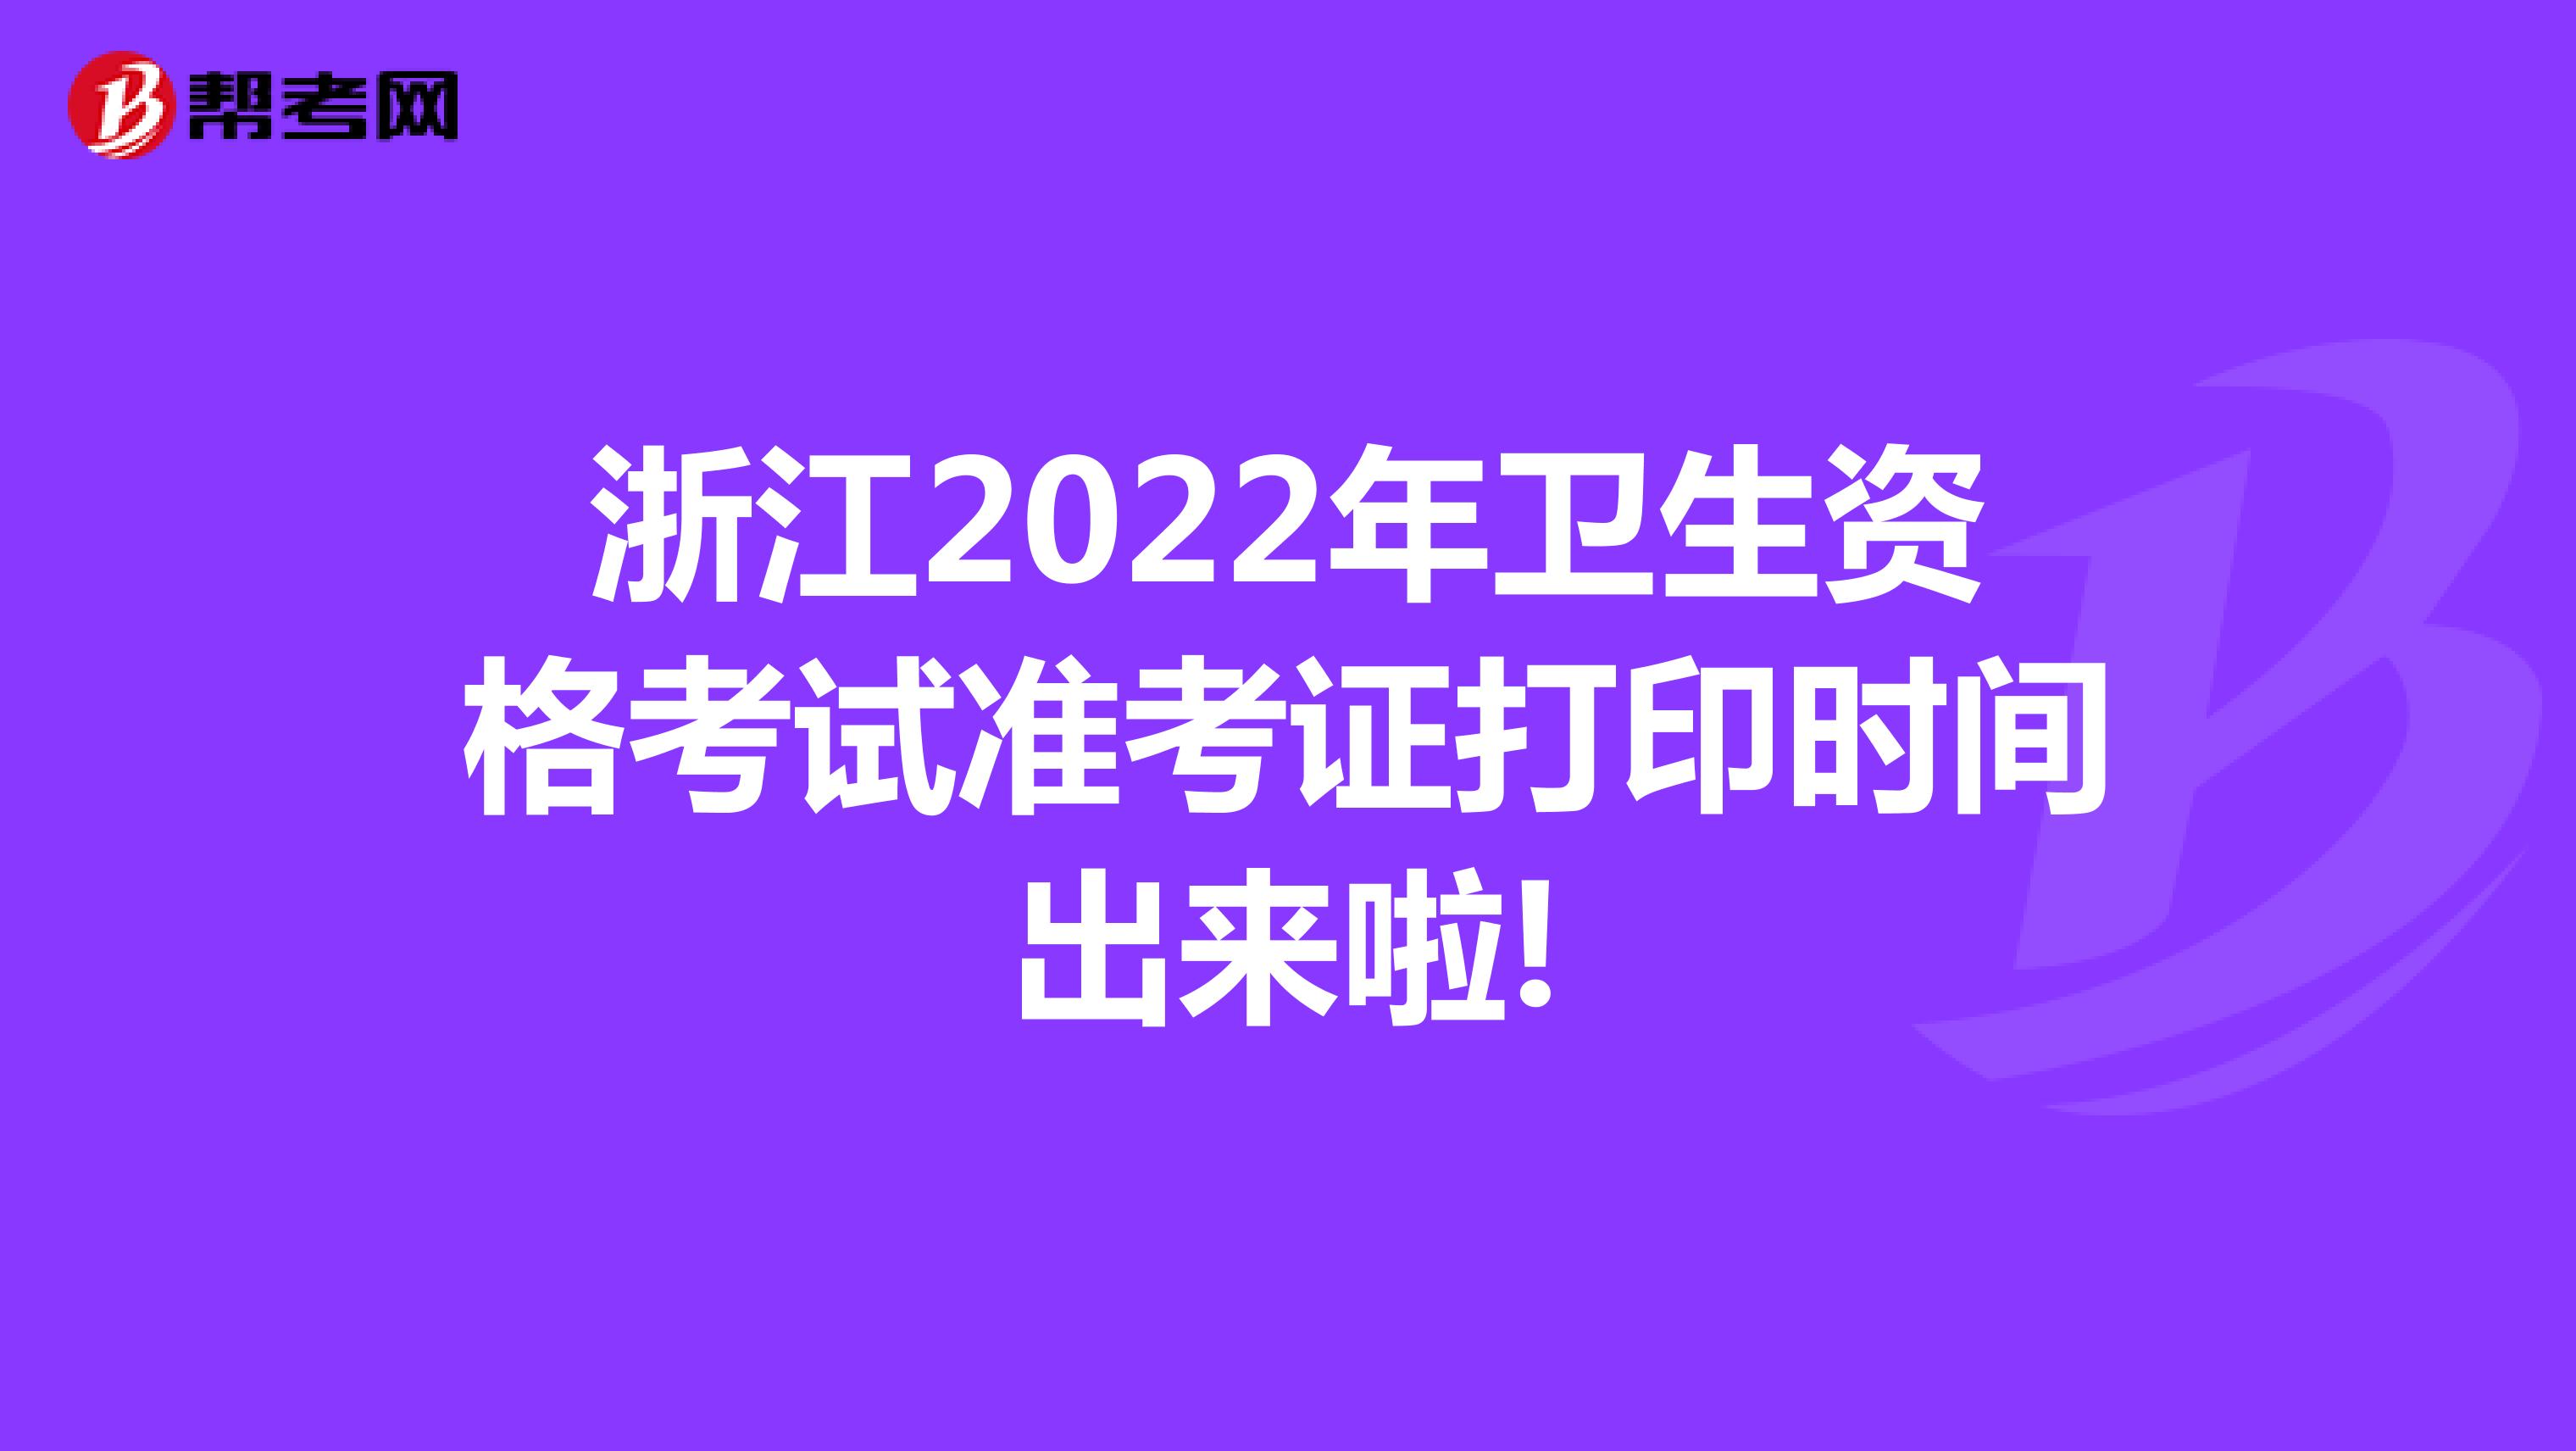 浙江2022年卫生资格考试准考证打印时间出来啦!